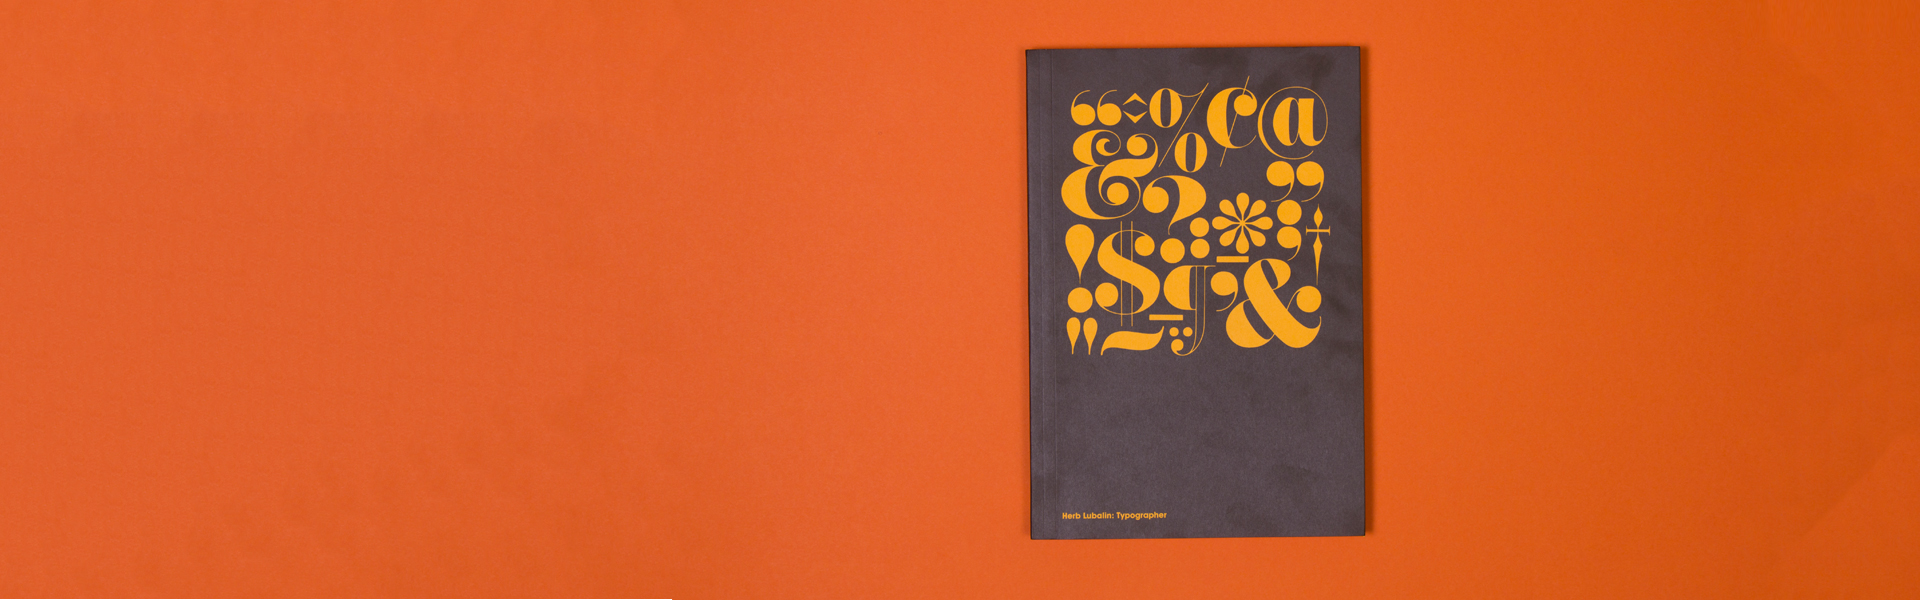 缩略图:Shillington读书俱乐部:Herb Lubalin Typographer by Unit Editions